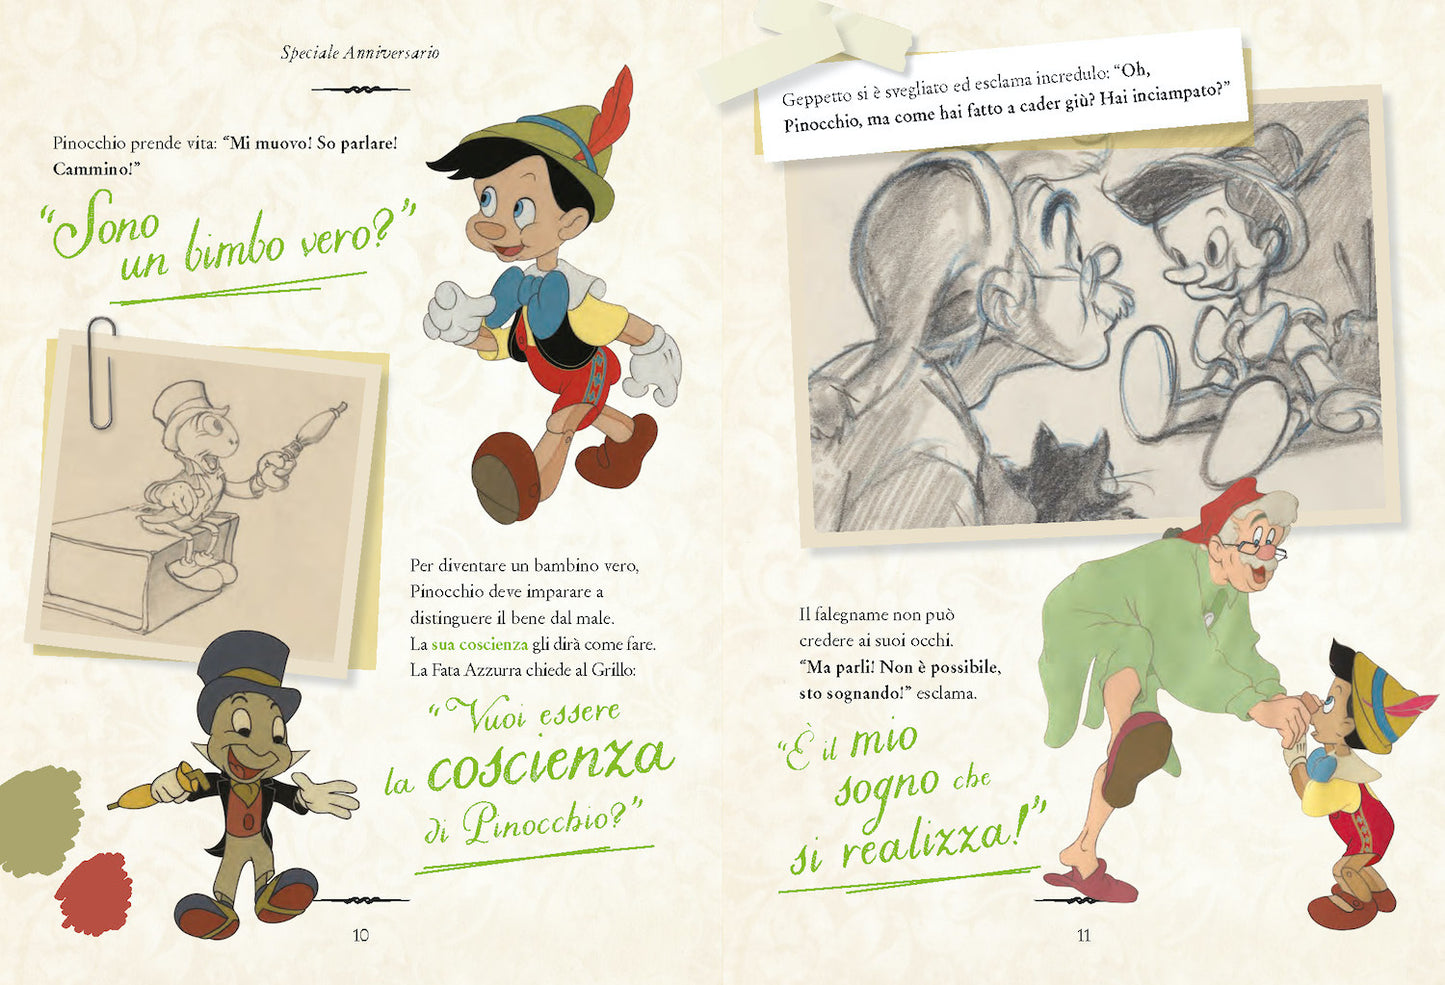 Pinocchio Speciale Anniversario Edizione limitata::Disney 100 Anni di meravigliose emozioni